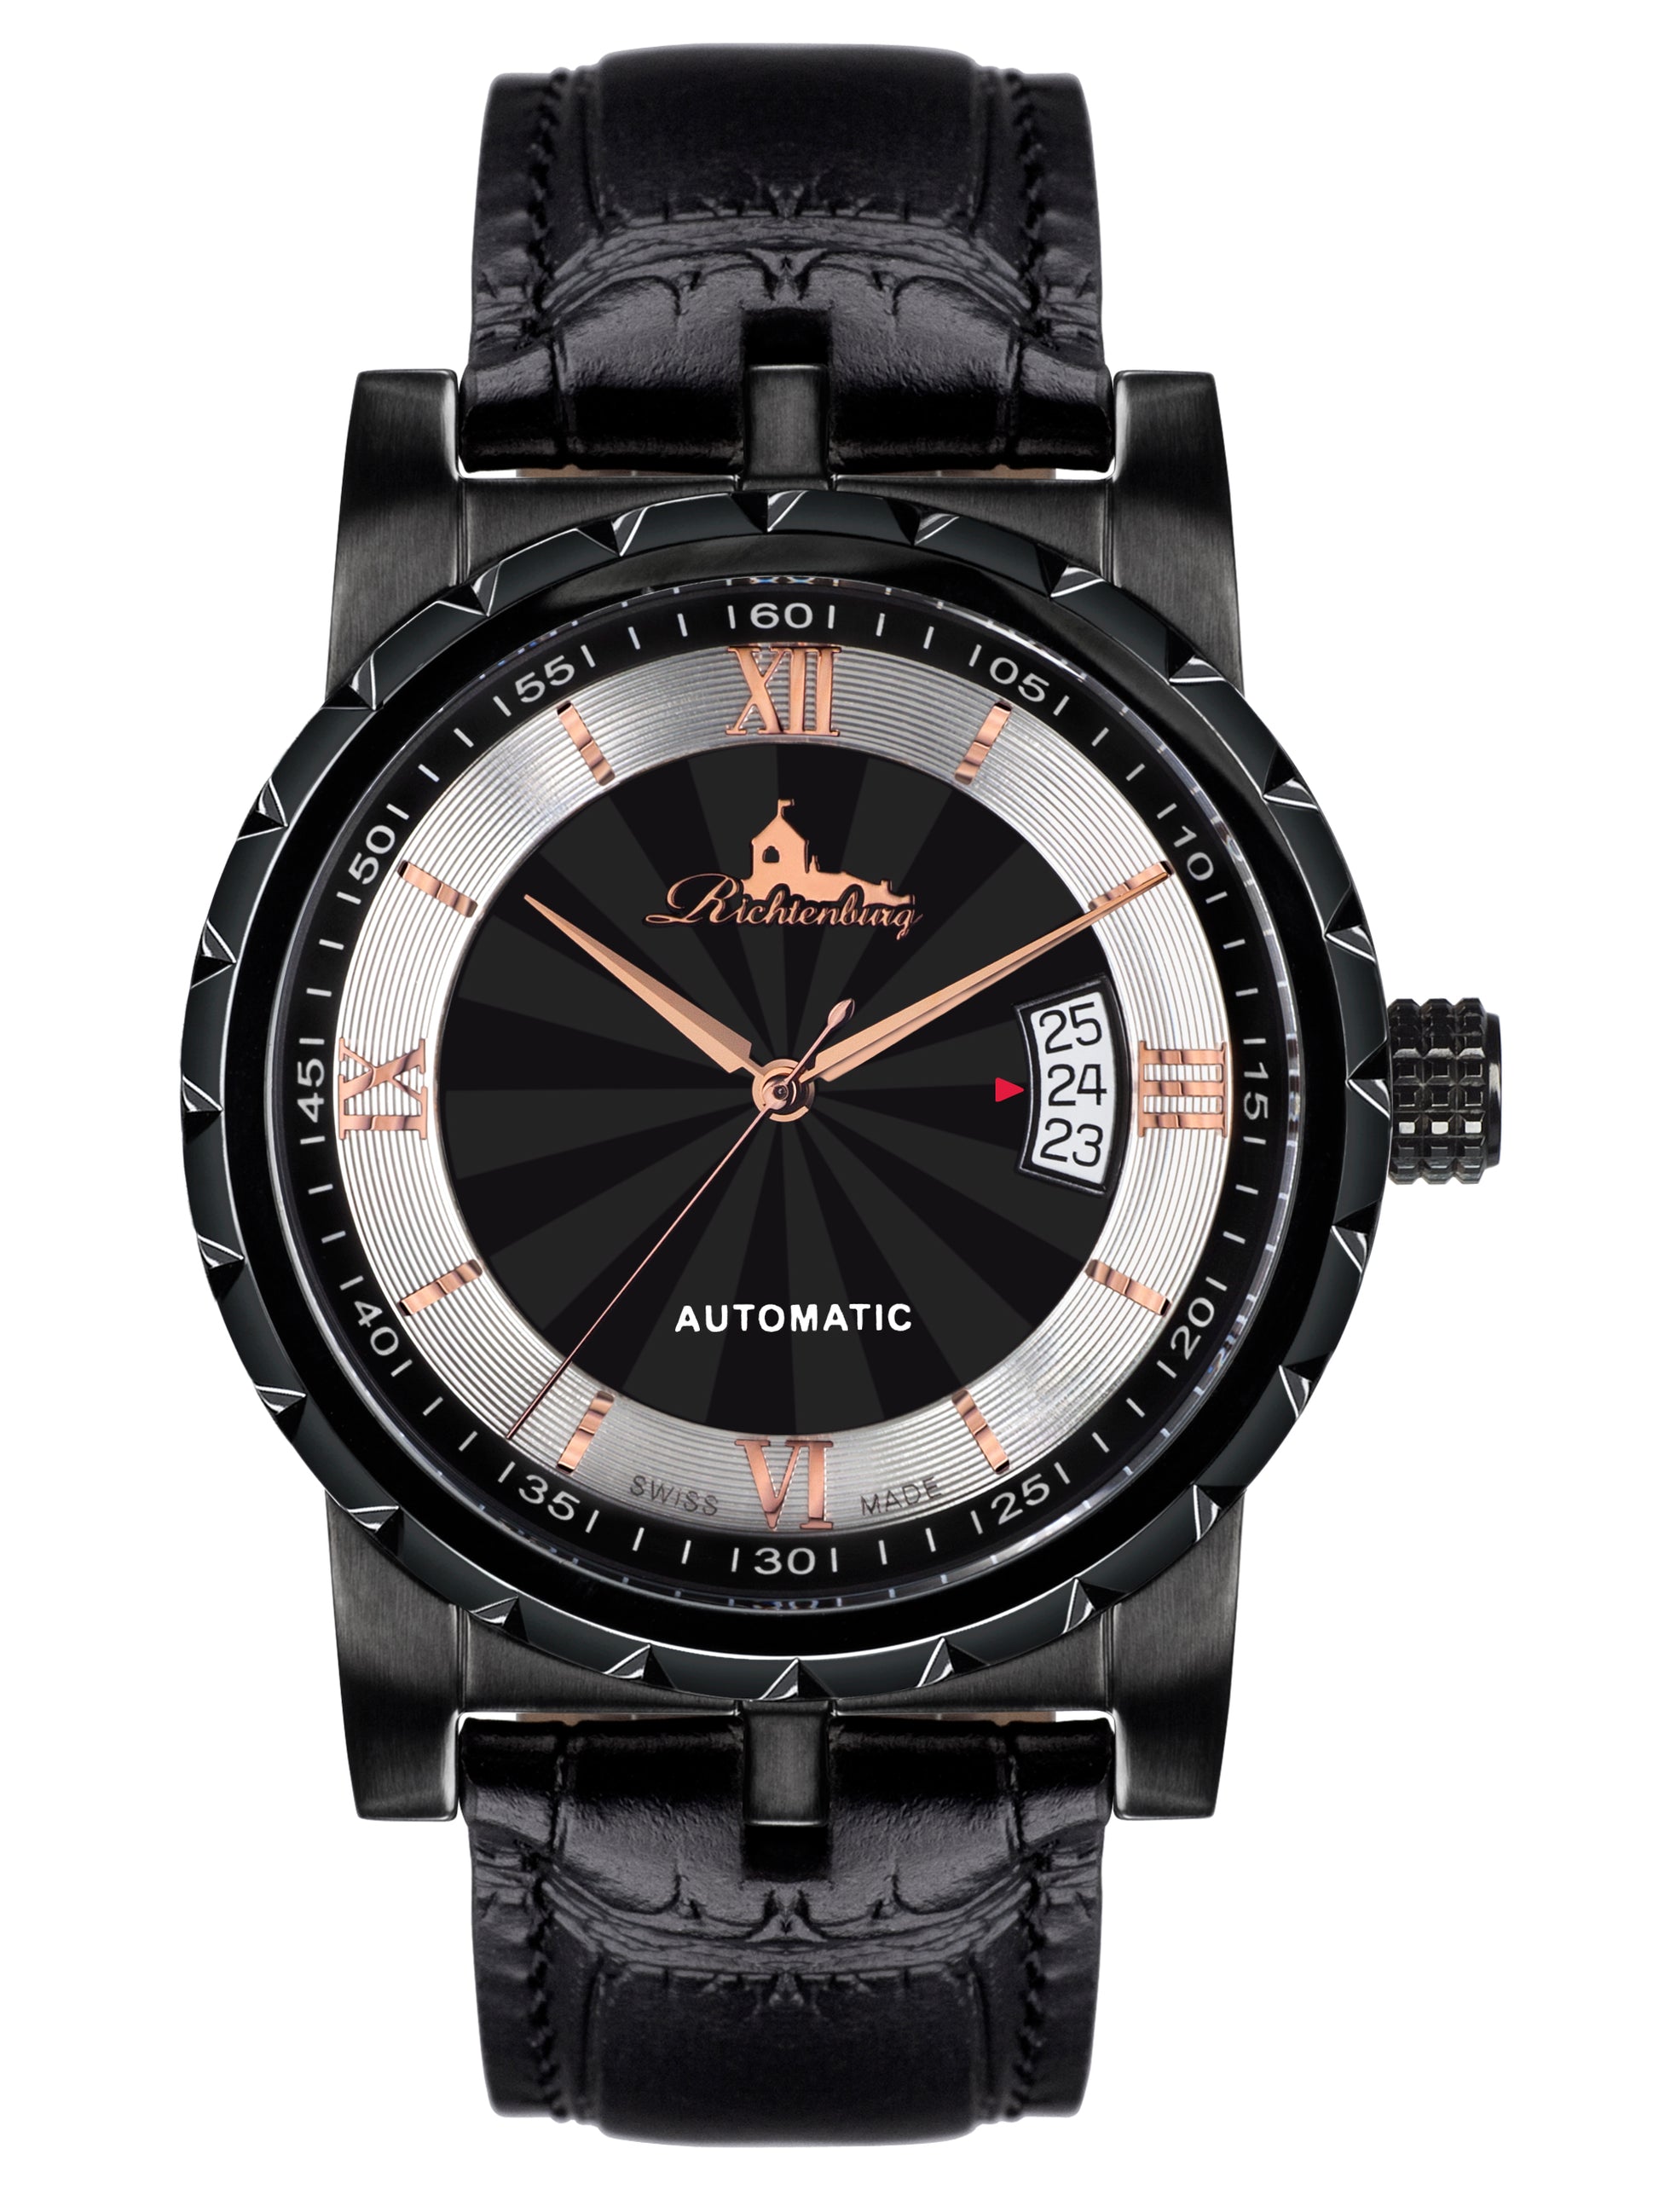 Automatic watches — Lugano — Richtenburg — black IP